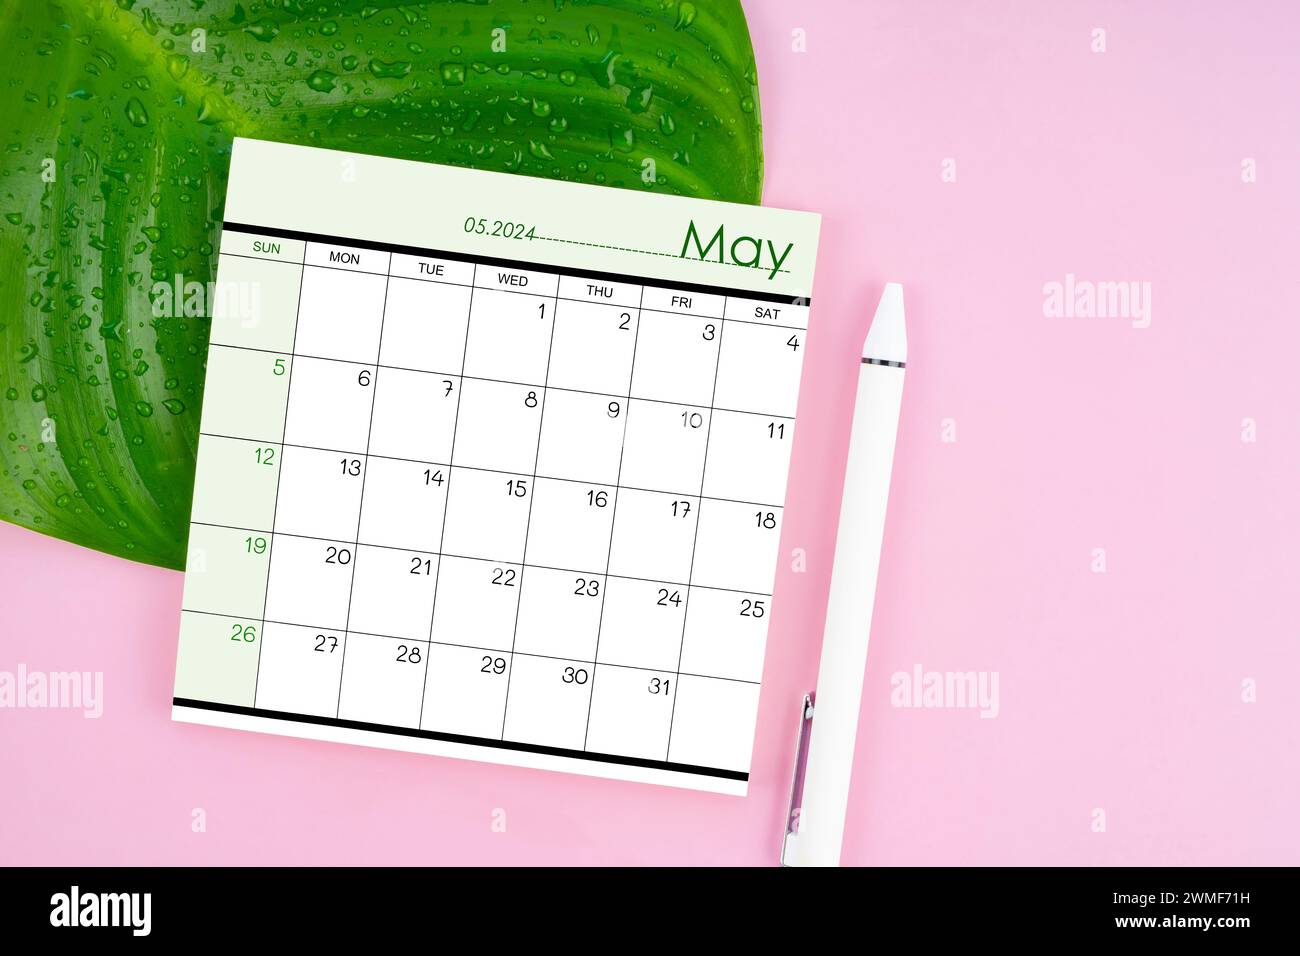 Mai 2024 page de calendrier et feuille verte fraîche avec des gouttes d'eau sur fond de couleur rose. Banque D'Images